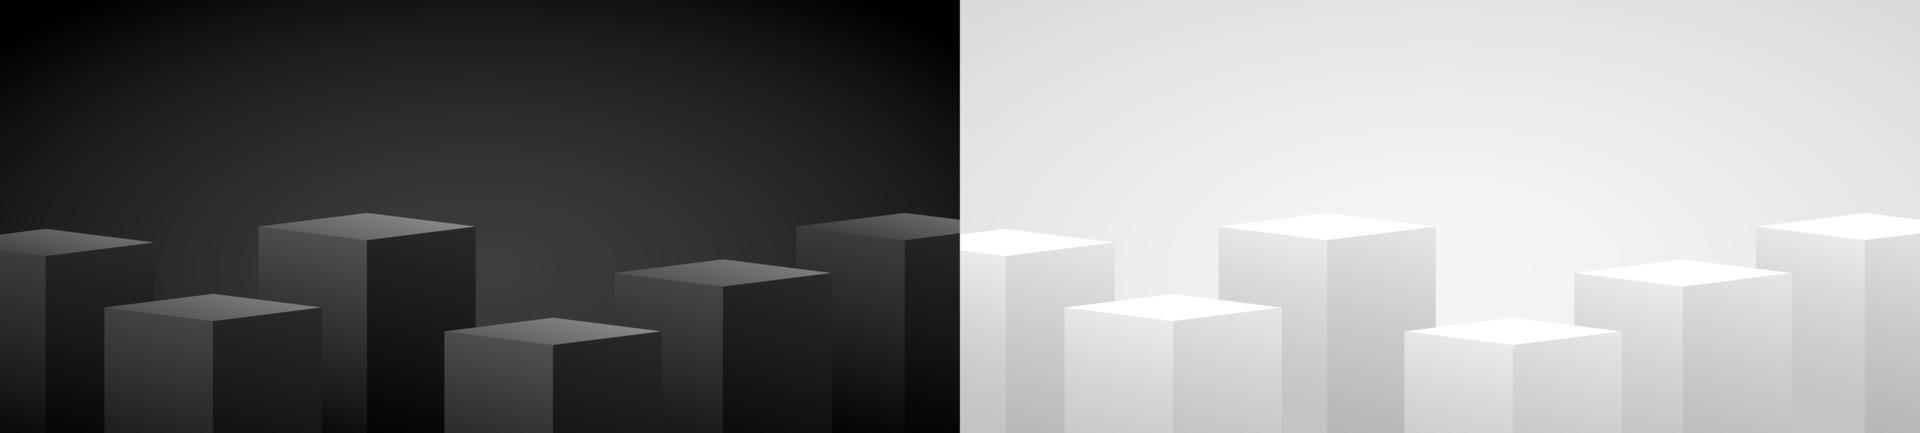 cooles minimalistisches Design schwarz-weißer geometrischer Podiumsanzeigehintergrund 3D-Illustrationsvektor vektor